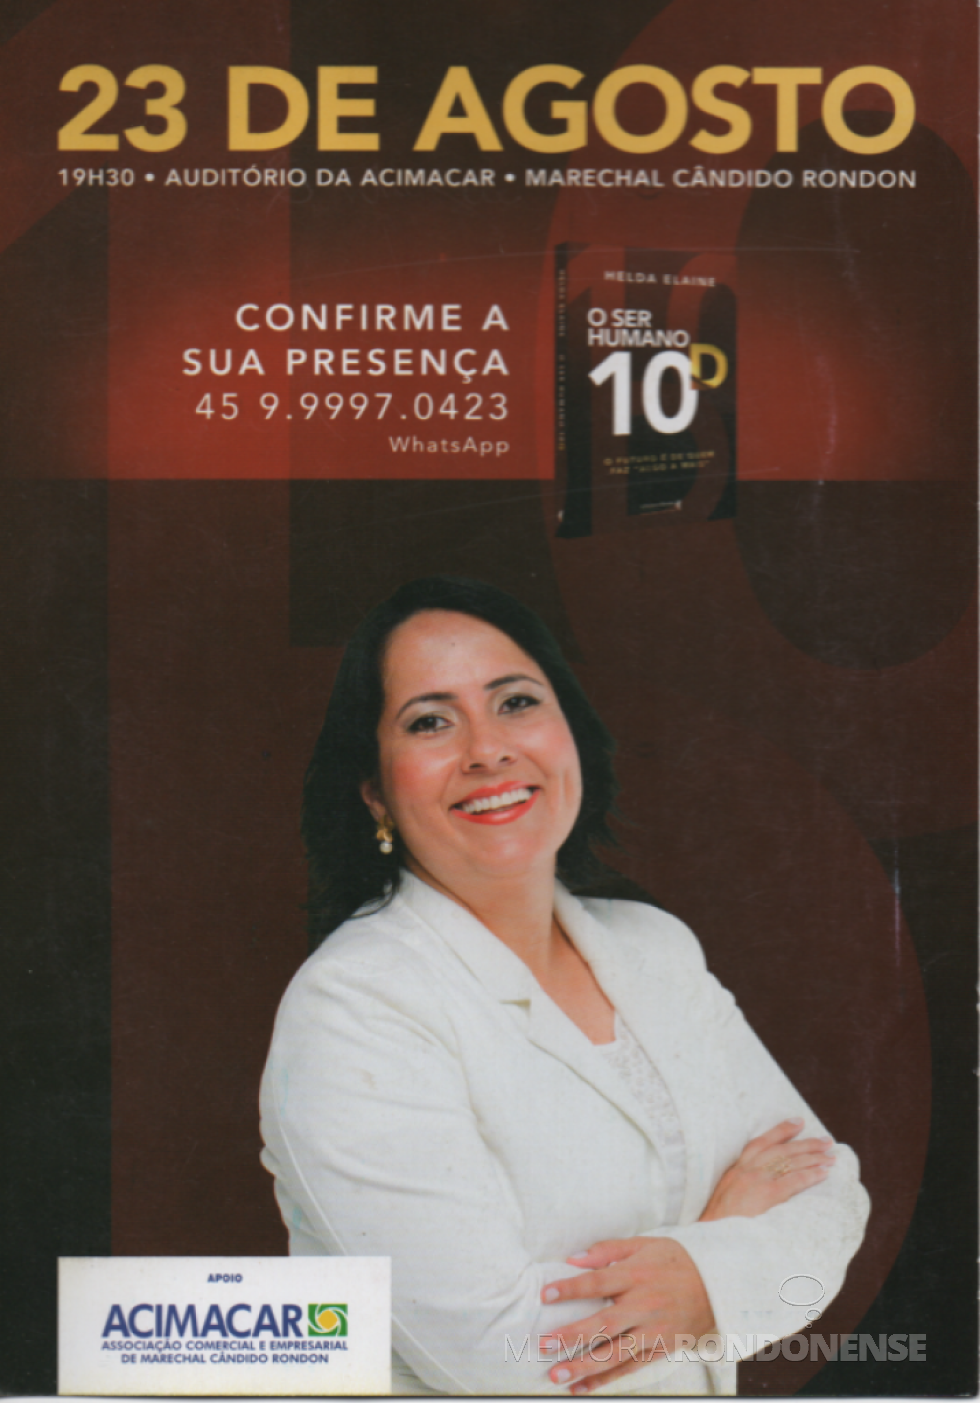 || Convite para o lançamento da rondonense Helda Elaine Völz.
Imagem: Acervo Projeto Memória  Rondonense - FOTO 12 - 